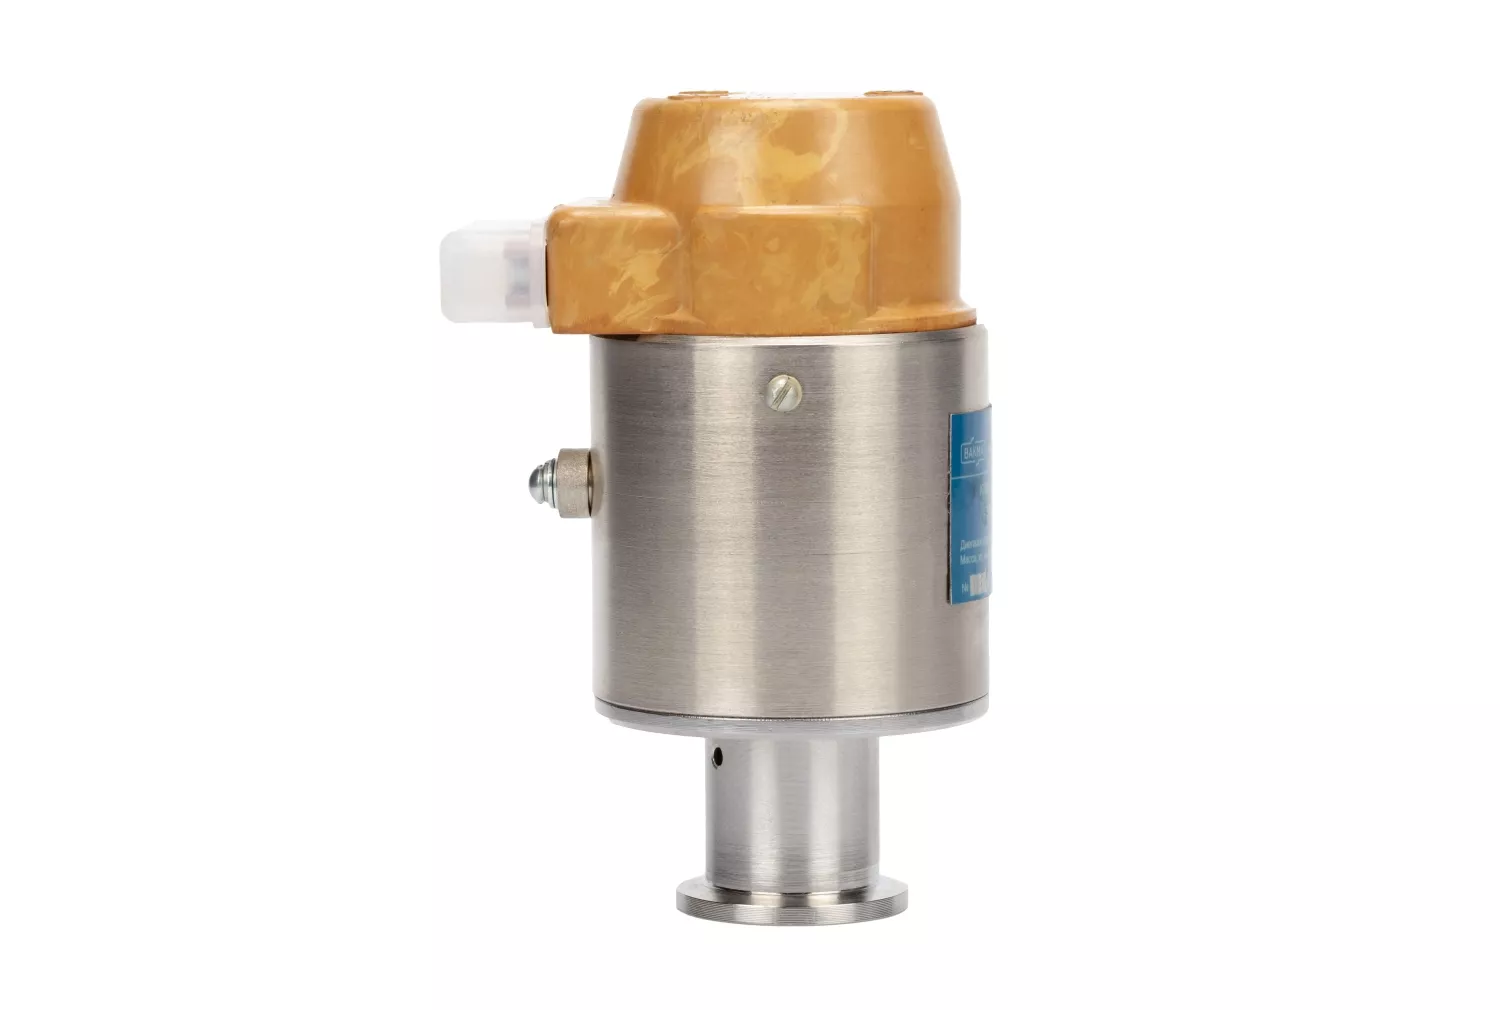 Купить в АО Вакууммаш ✓ Напускной вакуумный клапан 3КН-2,5 (нормально-закрытый) ✦ узнать цены и отзывы в каталоге